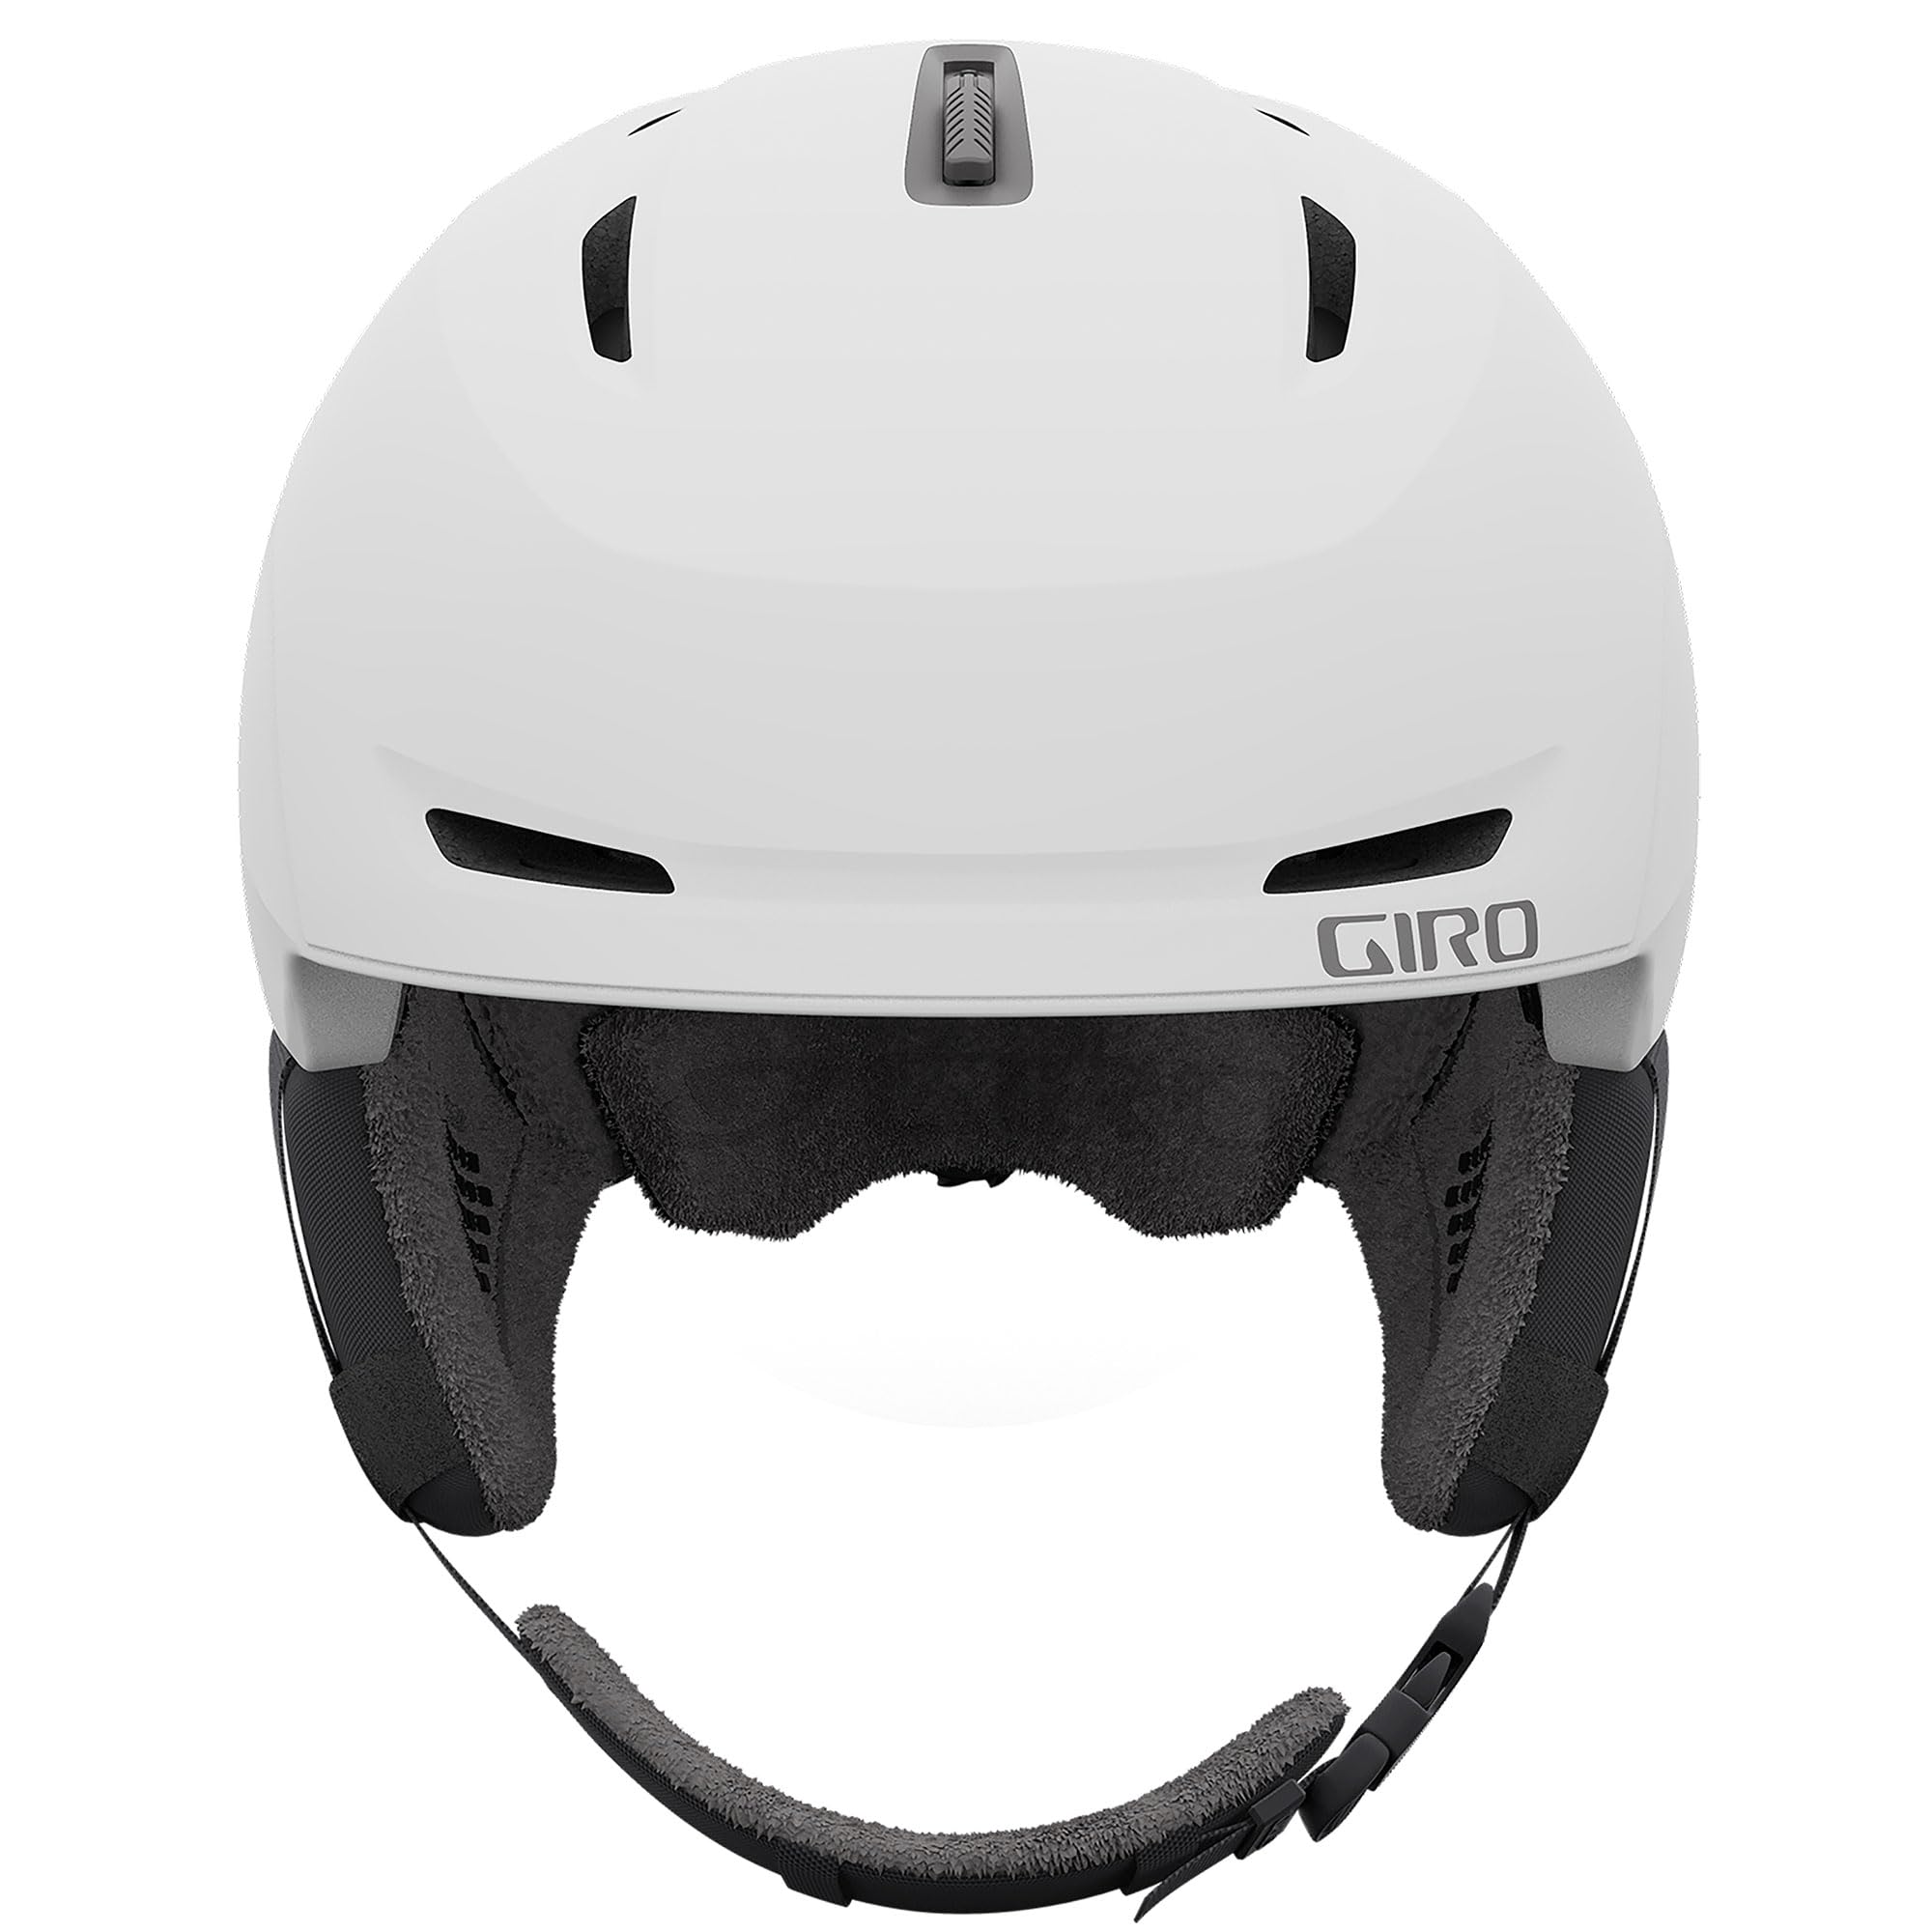 Giro Avera MIPS Asian Fit Ski Helmet - Snowboard Helmet for Women & Youth - Matte White - Size M (55.5-59cm)